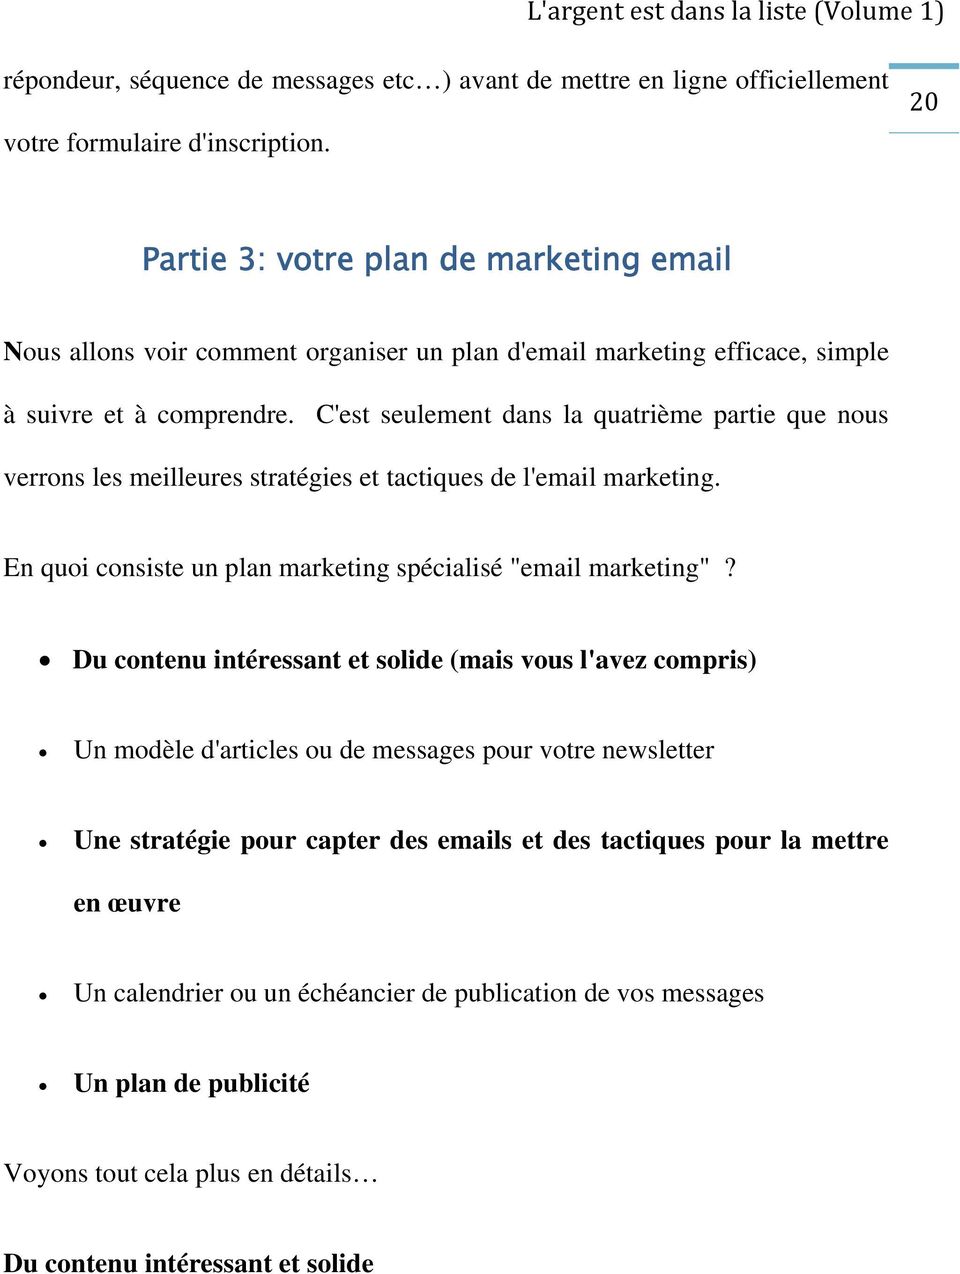 C'est seulement dans la quatrième partie que nous verrons les meilleures stratégies et tactiques de l'email marketing. En quoi consiste un plan marketing spécialisé "email marketing"?